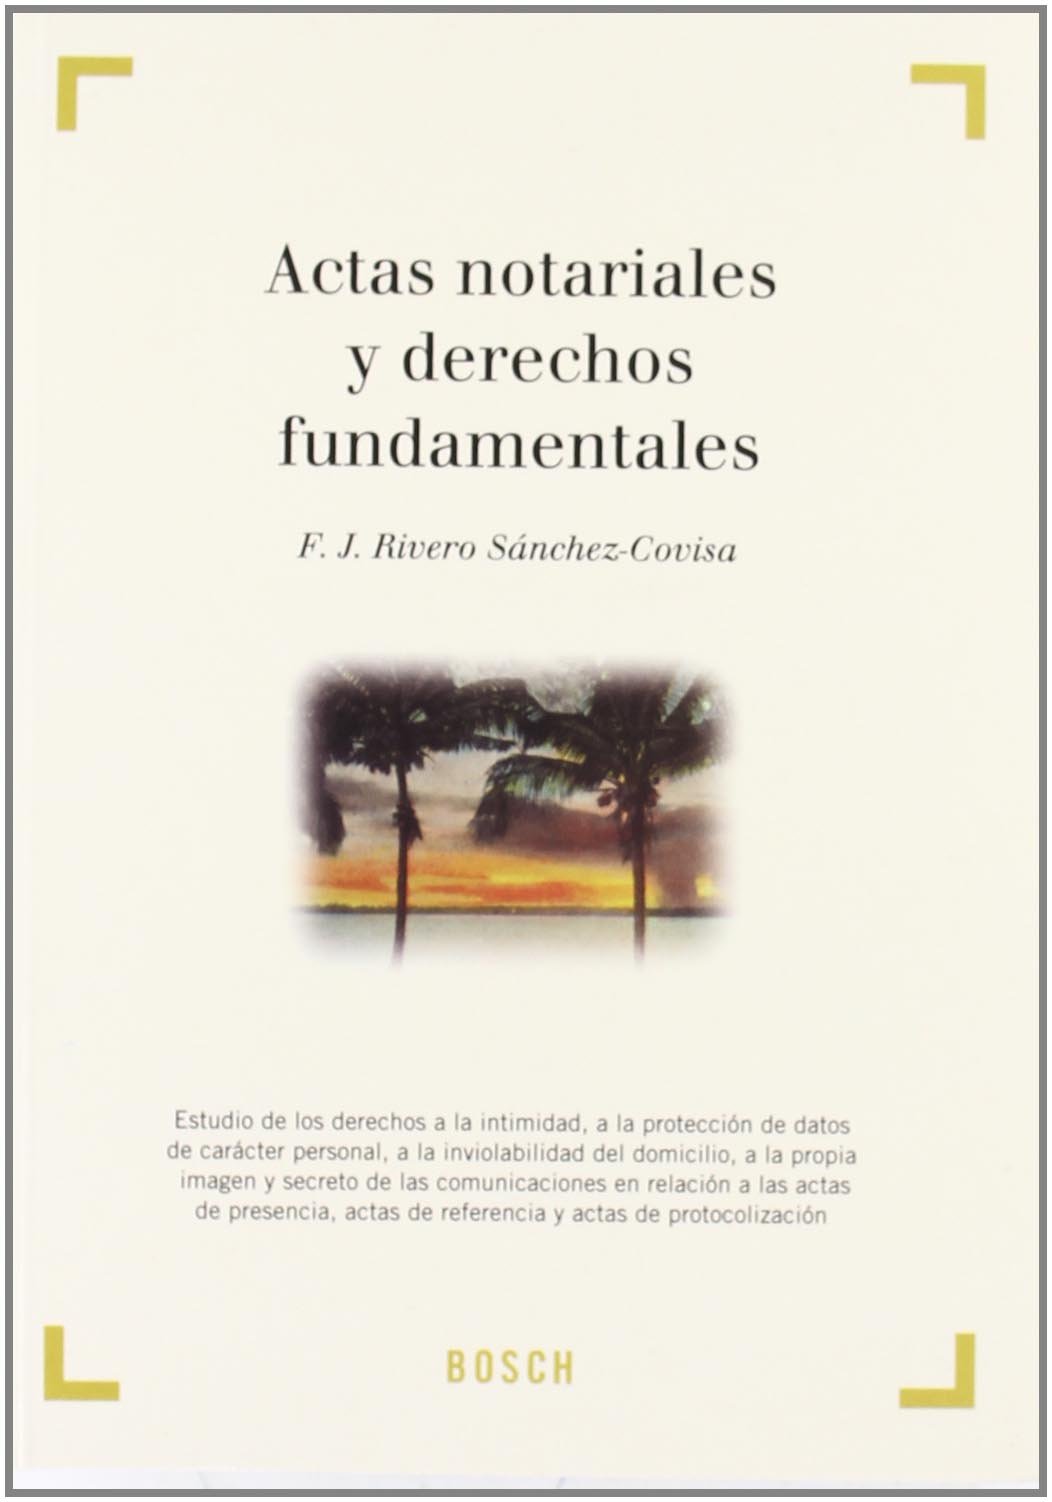 Actas notariales y derechos fundamentales